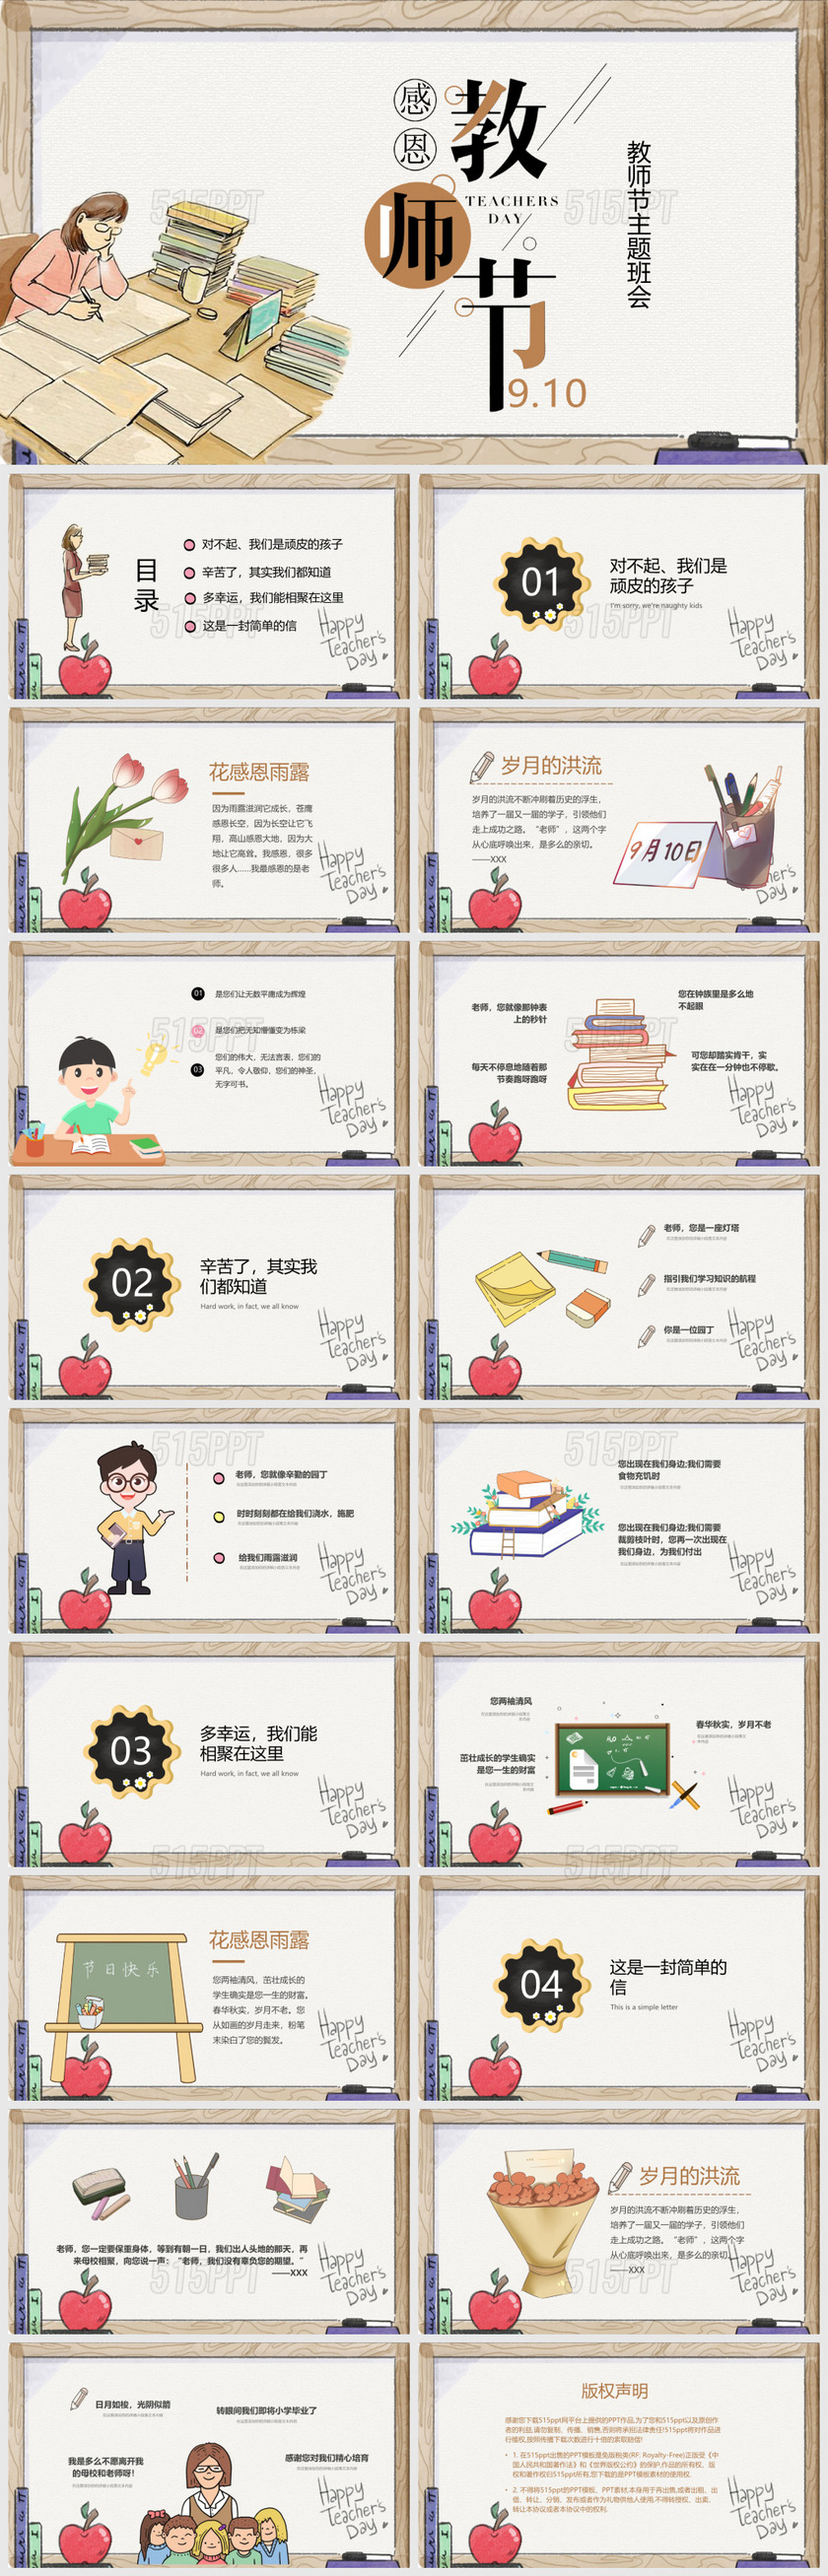 9月10日教师节手绘感恩教师节教师主题PPT模板